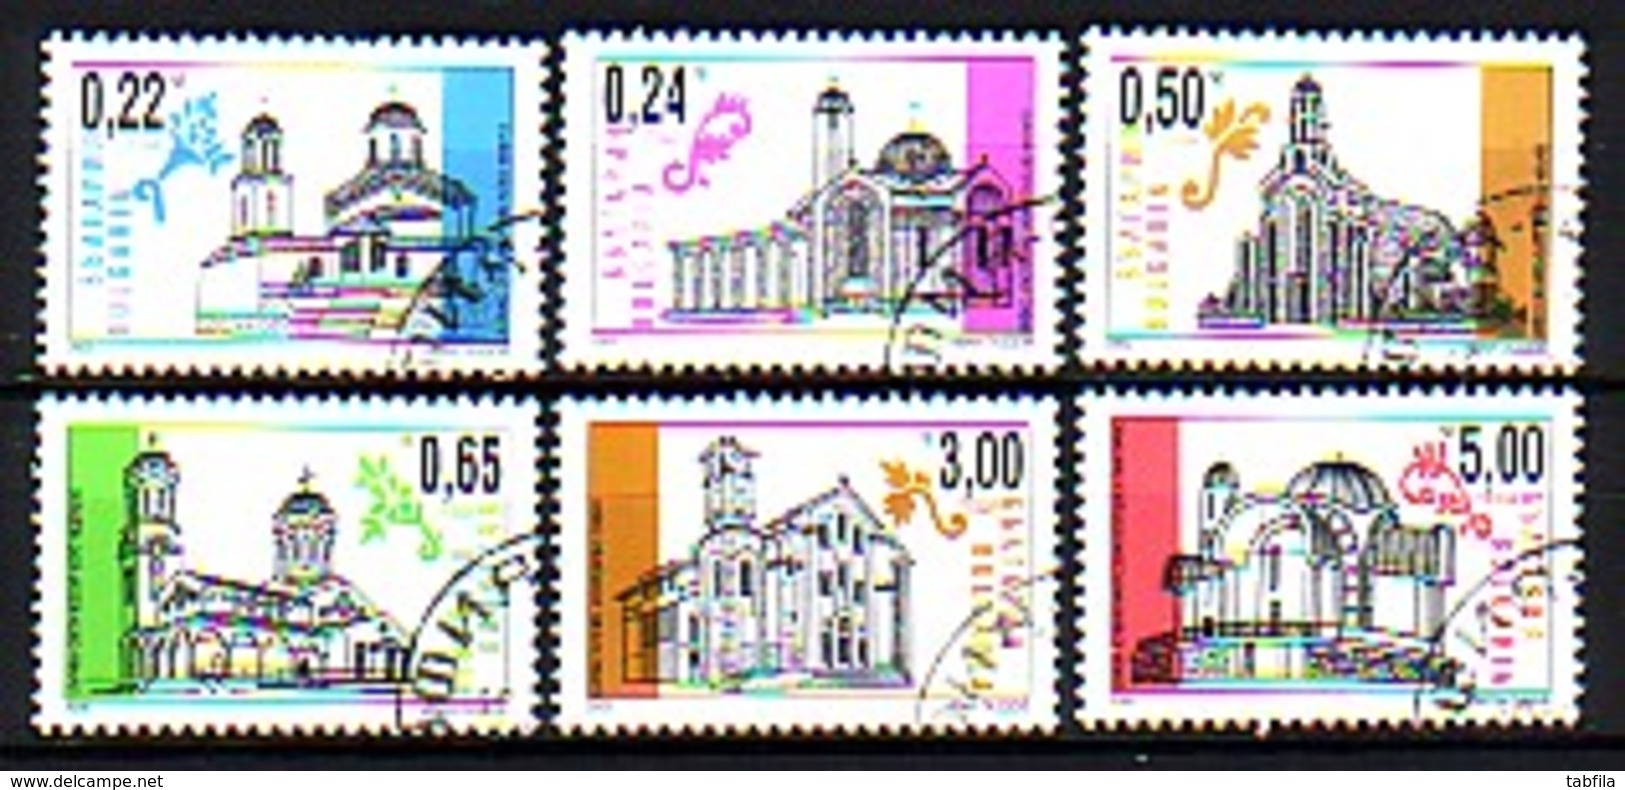 BULGARIA \ BULGARIE ~ 2000 - Serie Courant - Des Neuv Christian Eglises En Bulgarie - 6v Obl. Perforation Normal - Used Stamps